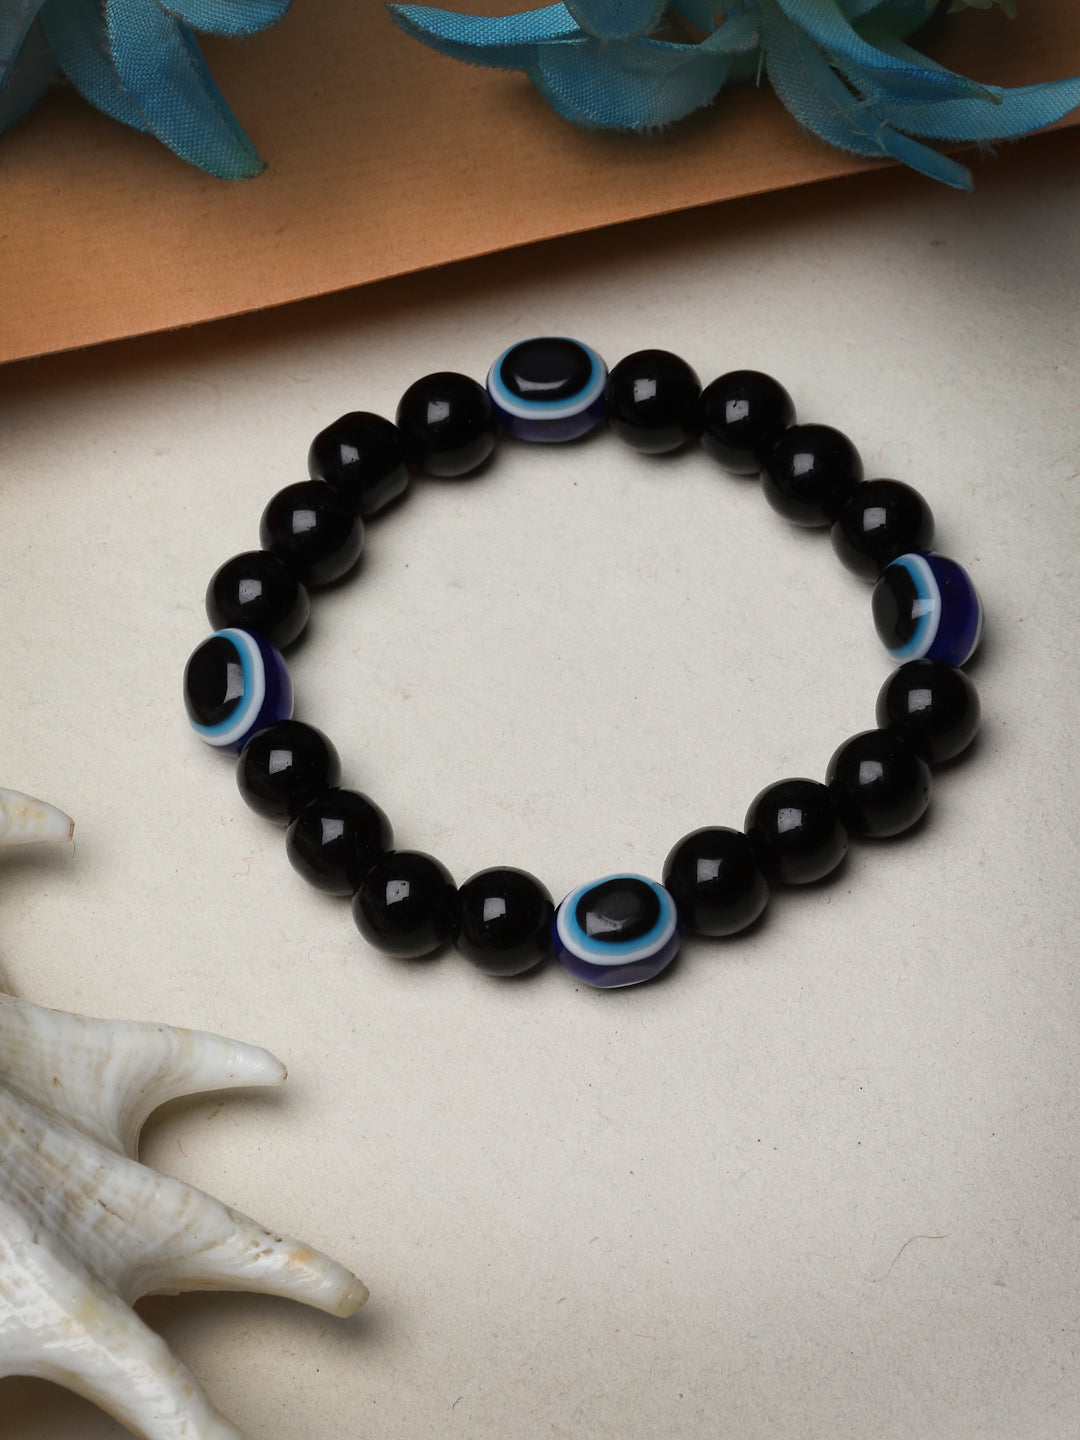 Unisex evil eye beaded adjustable bracelet - NVR